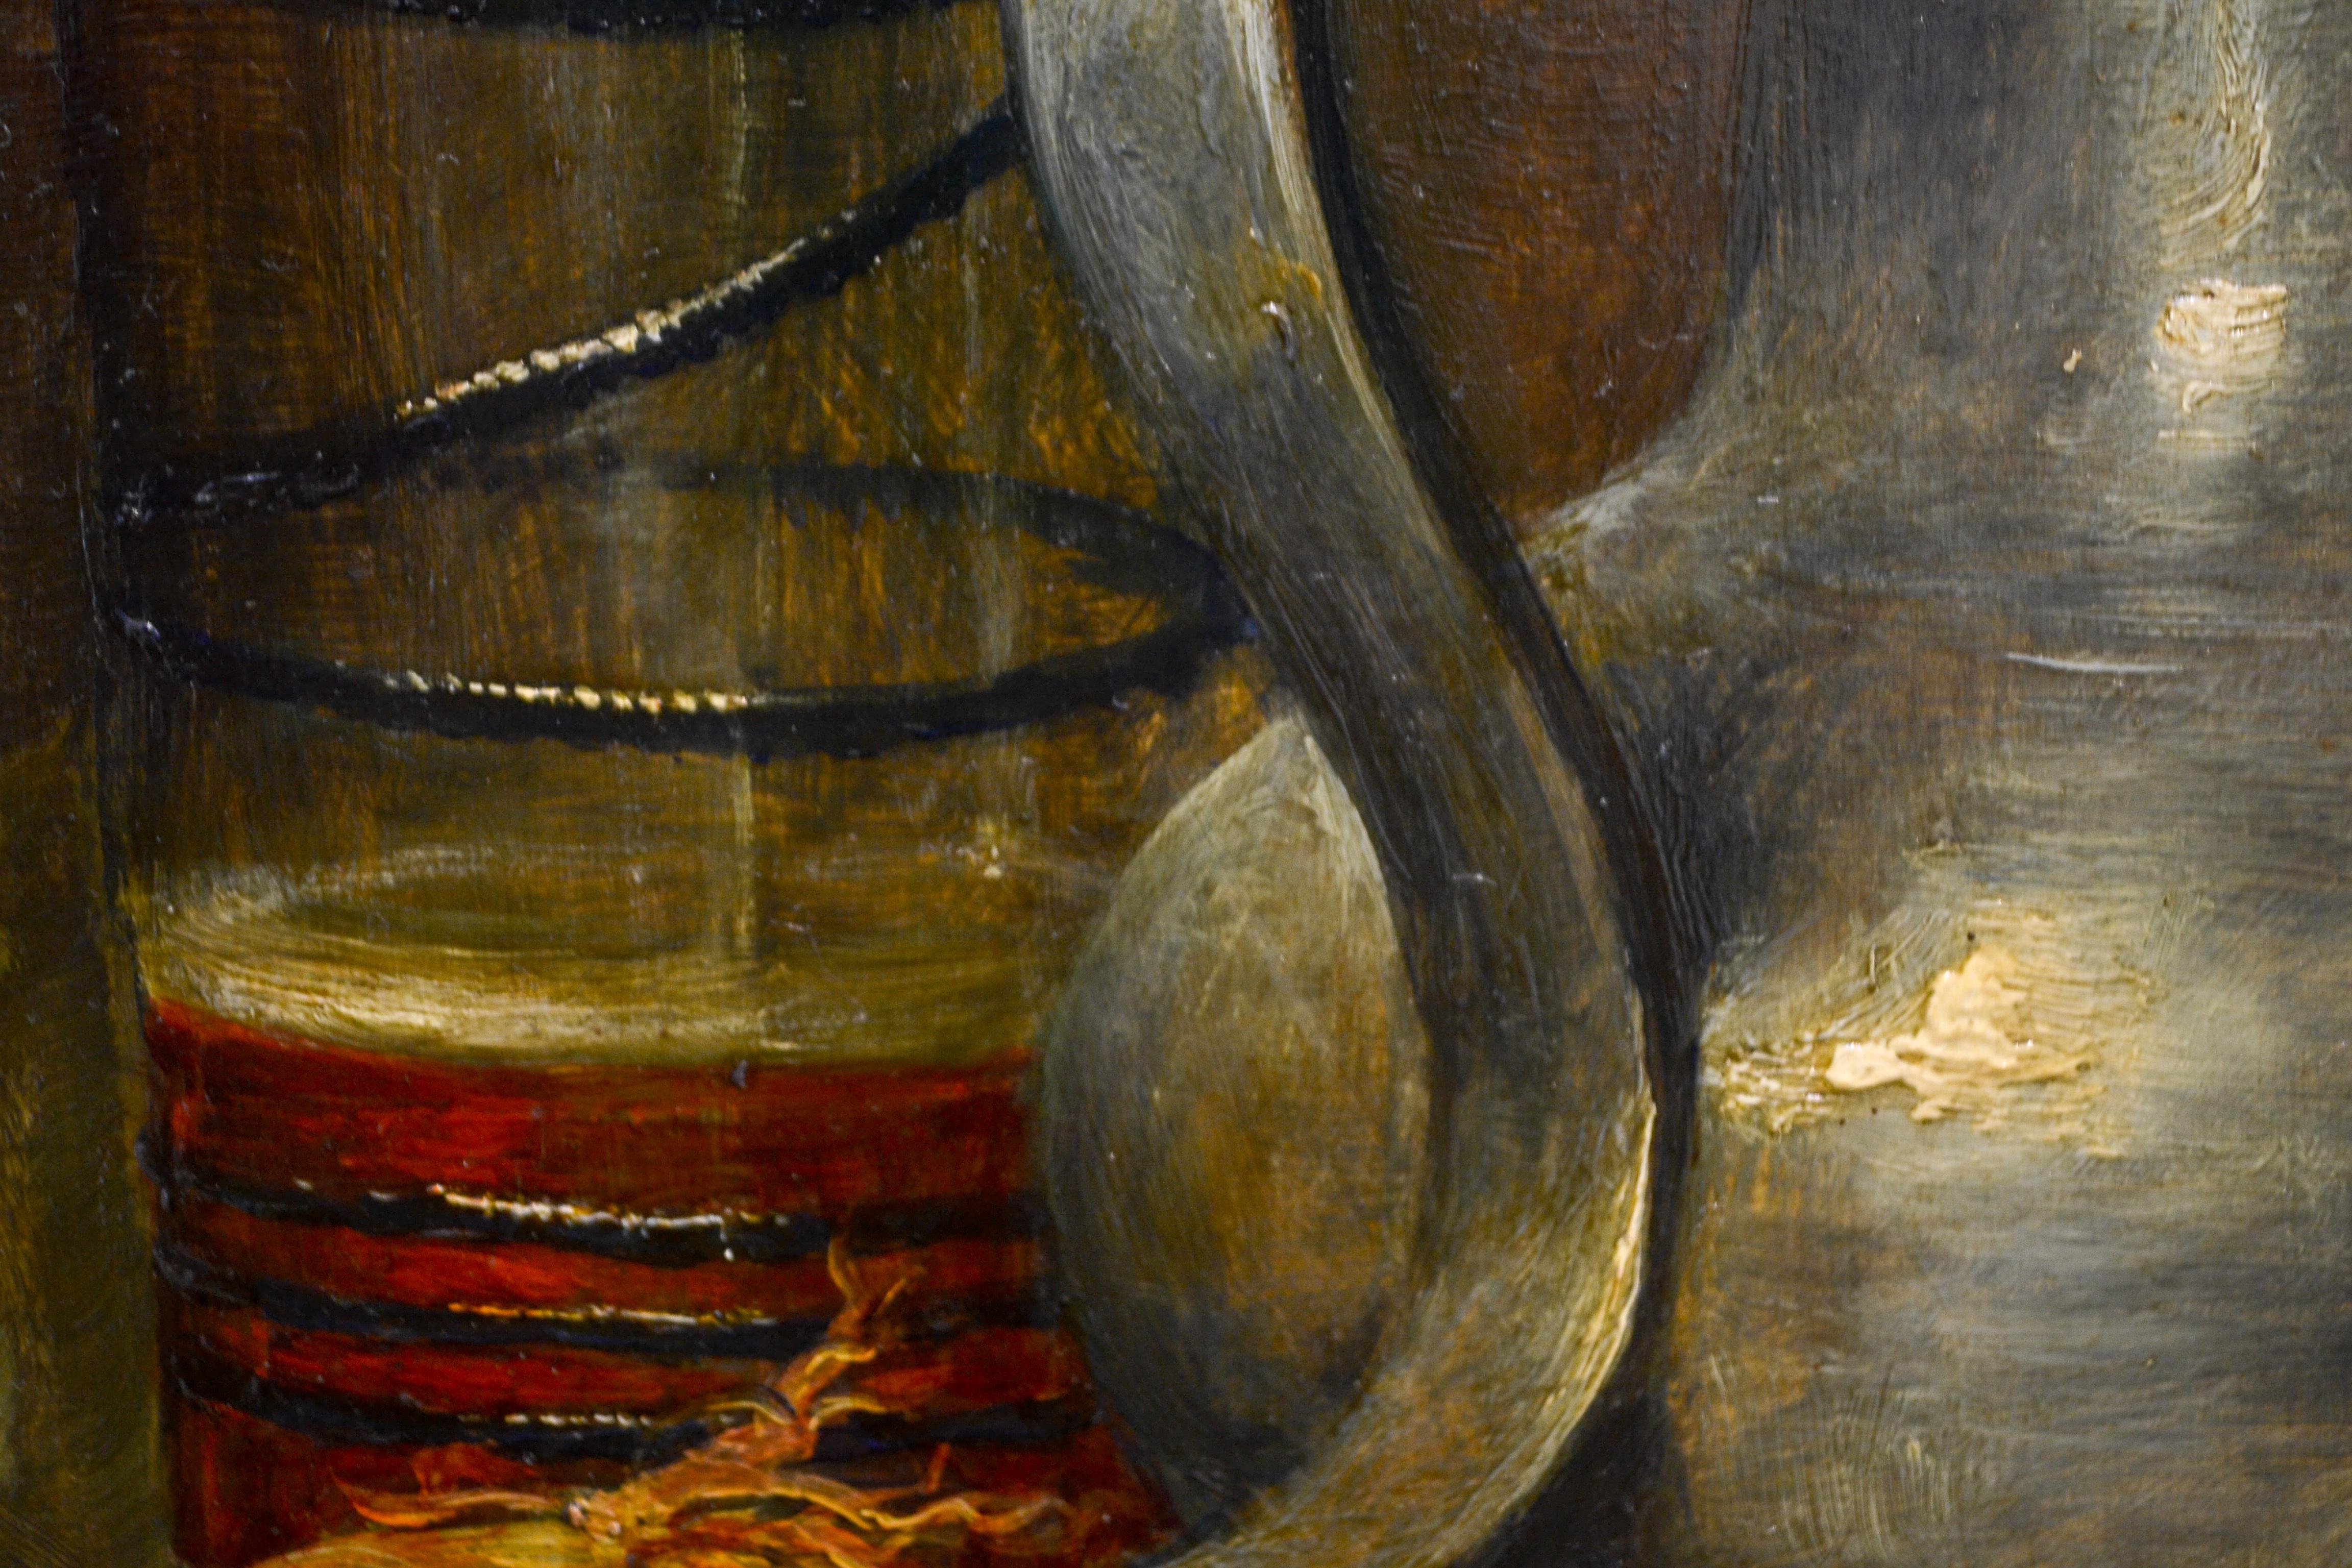 Canne et assiette en étain avec poisson, oignon et un verre de bière - Nature morte hollandaise classique  - Noir Still-Life Painting par Cornelis Le Mair